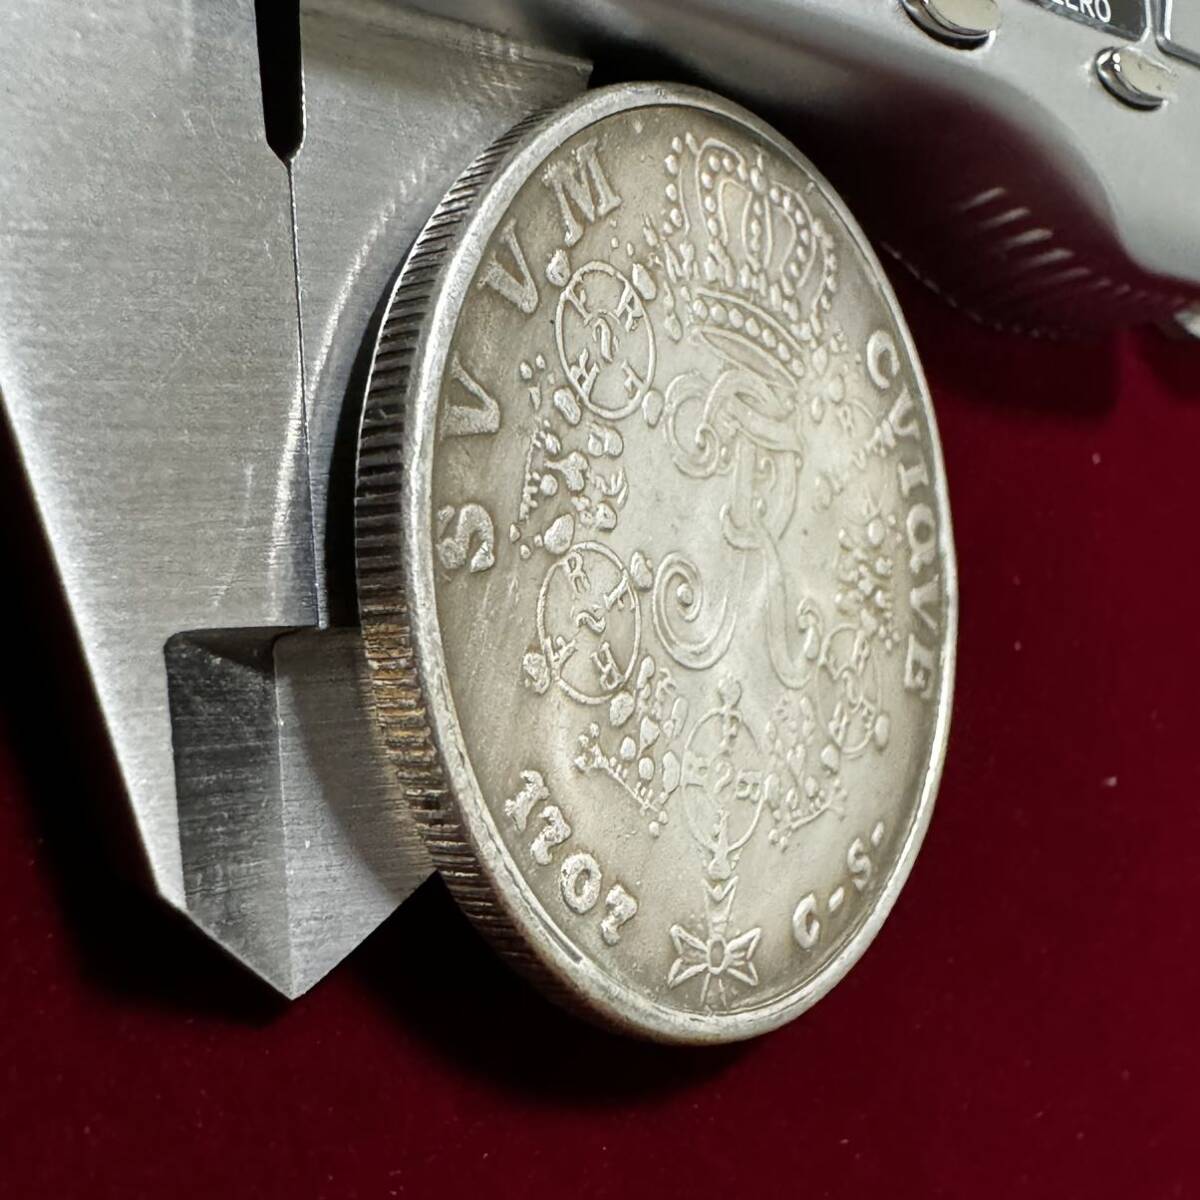 ドイツ プロイセン王国 硬貨 古銭 1707年 フリードリヒ1世 月桂樹 国章 クラウン コイン 銀貨 外国古銭 海外硬貨 の画像3